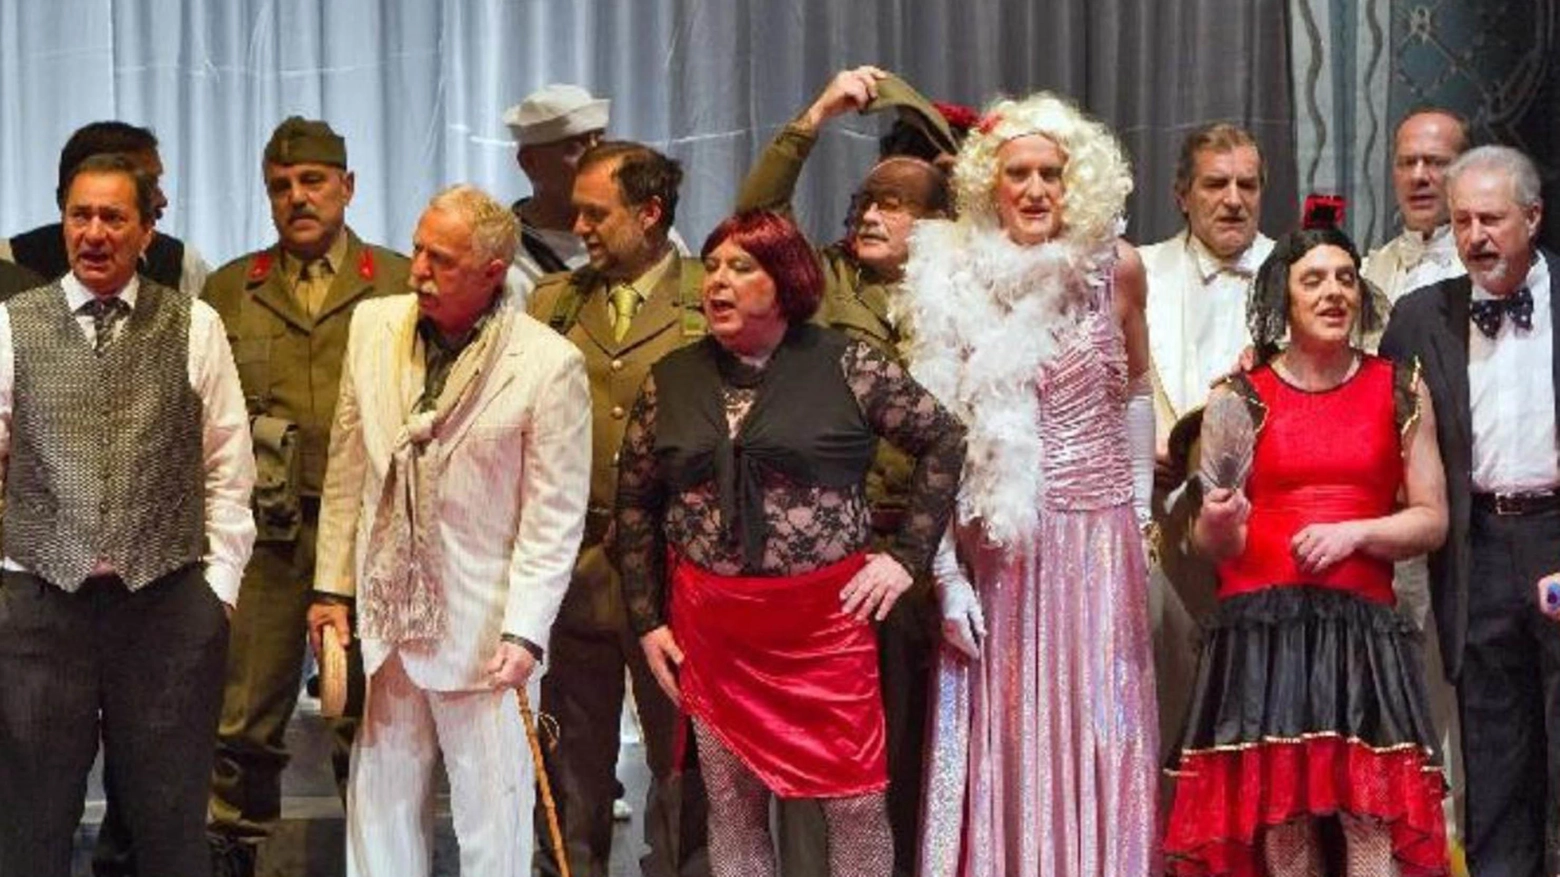 Ragazzi del ’53 Ritorno a teatro  per celebrare 70 anni di operette